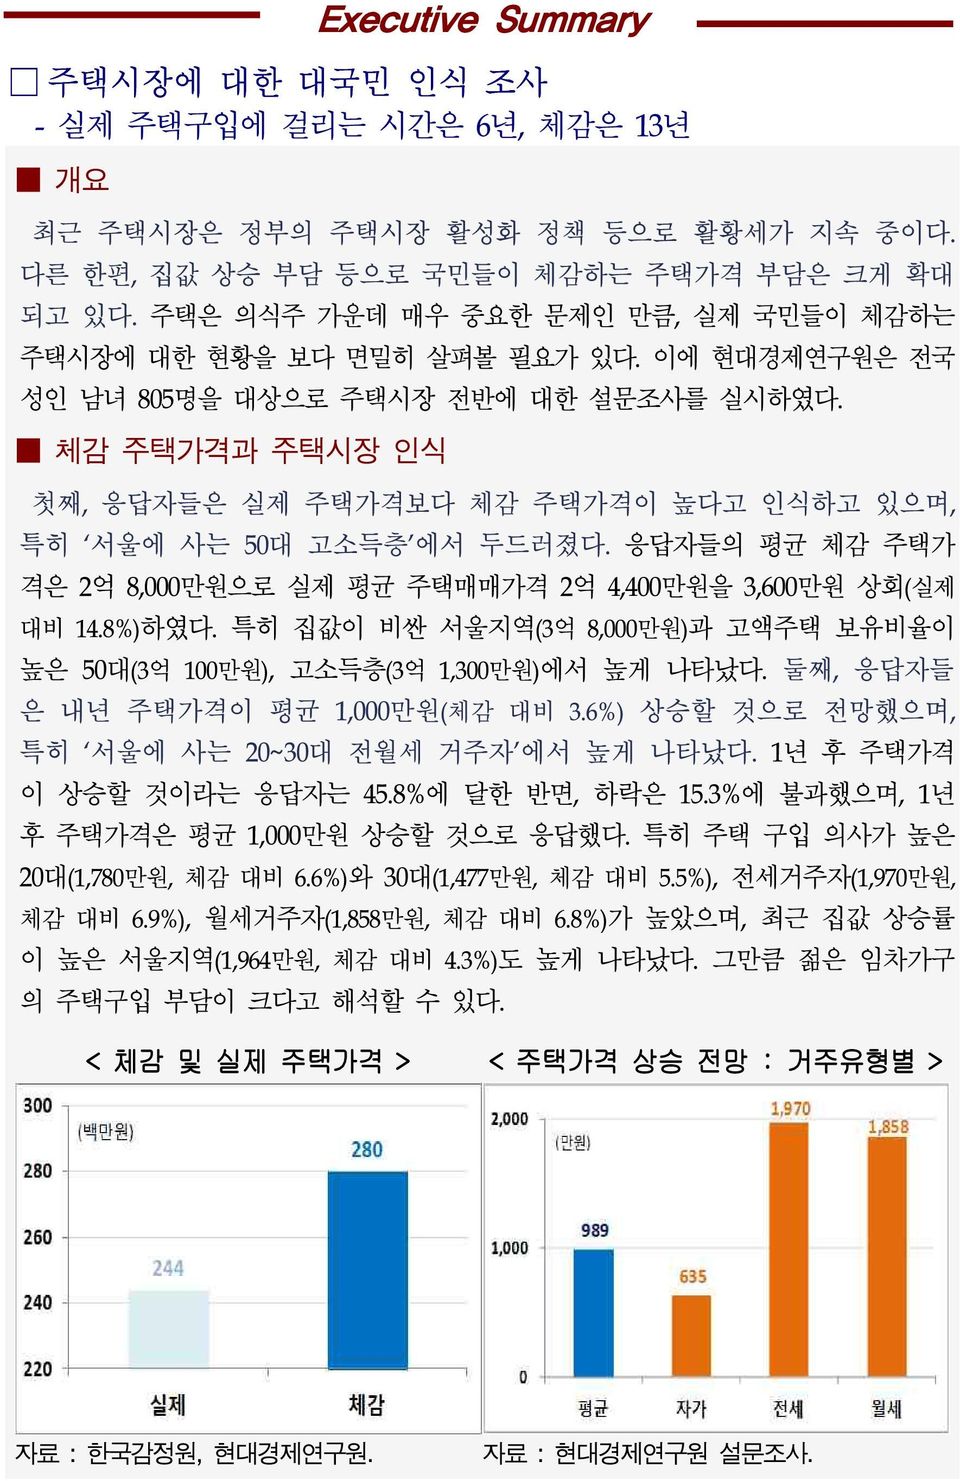 체감 주택가격과 주택시장 인식 Executive Summary 첫째, 응답자들은 실제 주택가격보다 체감 주택가격이 높다고 인식하고 있으며, 특히 서울에 사는 50대 고소득층 에서 두드러졌다. 응답자들의 평균 체감 주택가 격은 2억 8,000만원으로 실제 평균 주택매매가격 2억 4,400만원을 3,600만원 상회(실제 대비 14.8%)하였다.